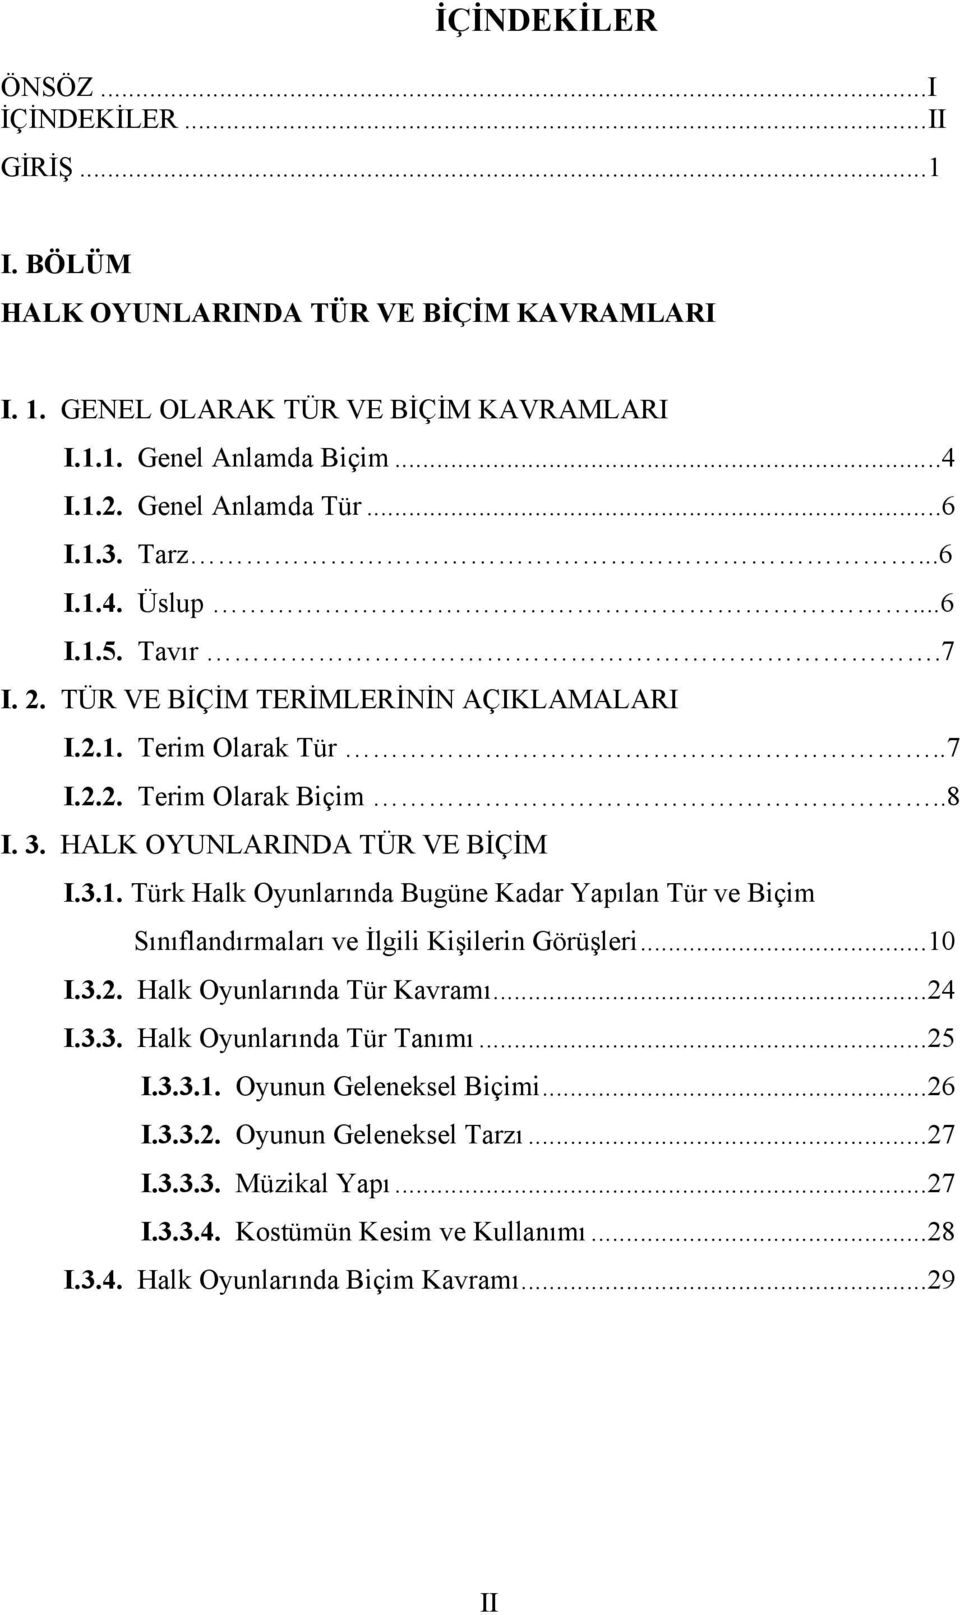 HALK OYUNLARINDA TÜR VE BİÇİM I.3.1. Türk Halk Oyunlarında Bugüne Kadar Yapılan Tür ve Biçim Sınıflandırmaları ve İlgili Kişilerin Görüşleri...10 I.3.2. Halk Oyunlarında Tür Kavramı...24 I.3.3. Halk Oyunlarında Tür Tanımı.